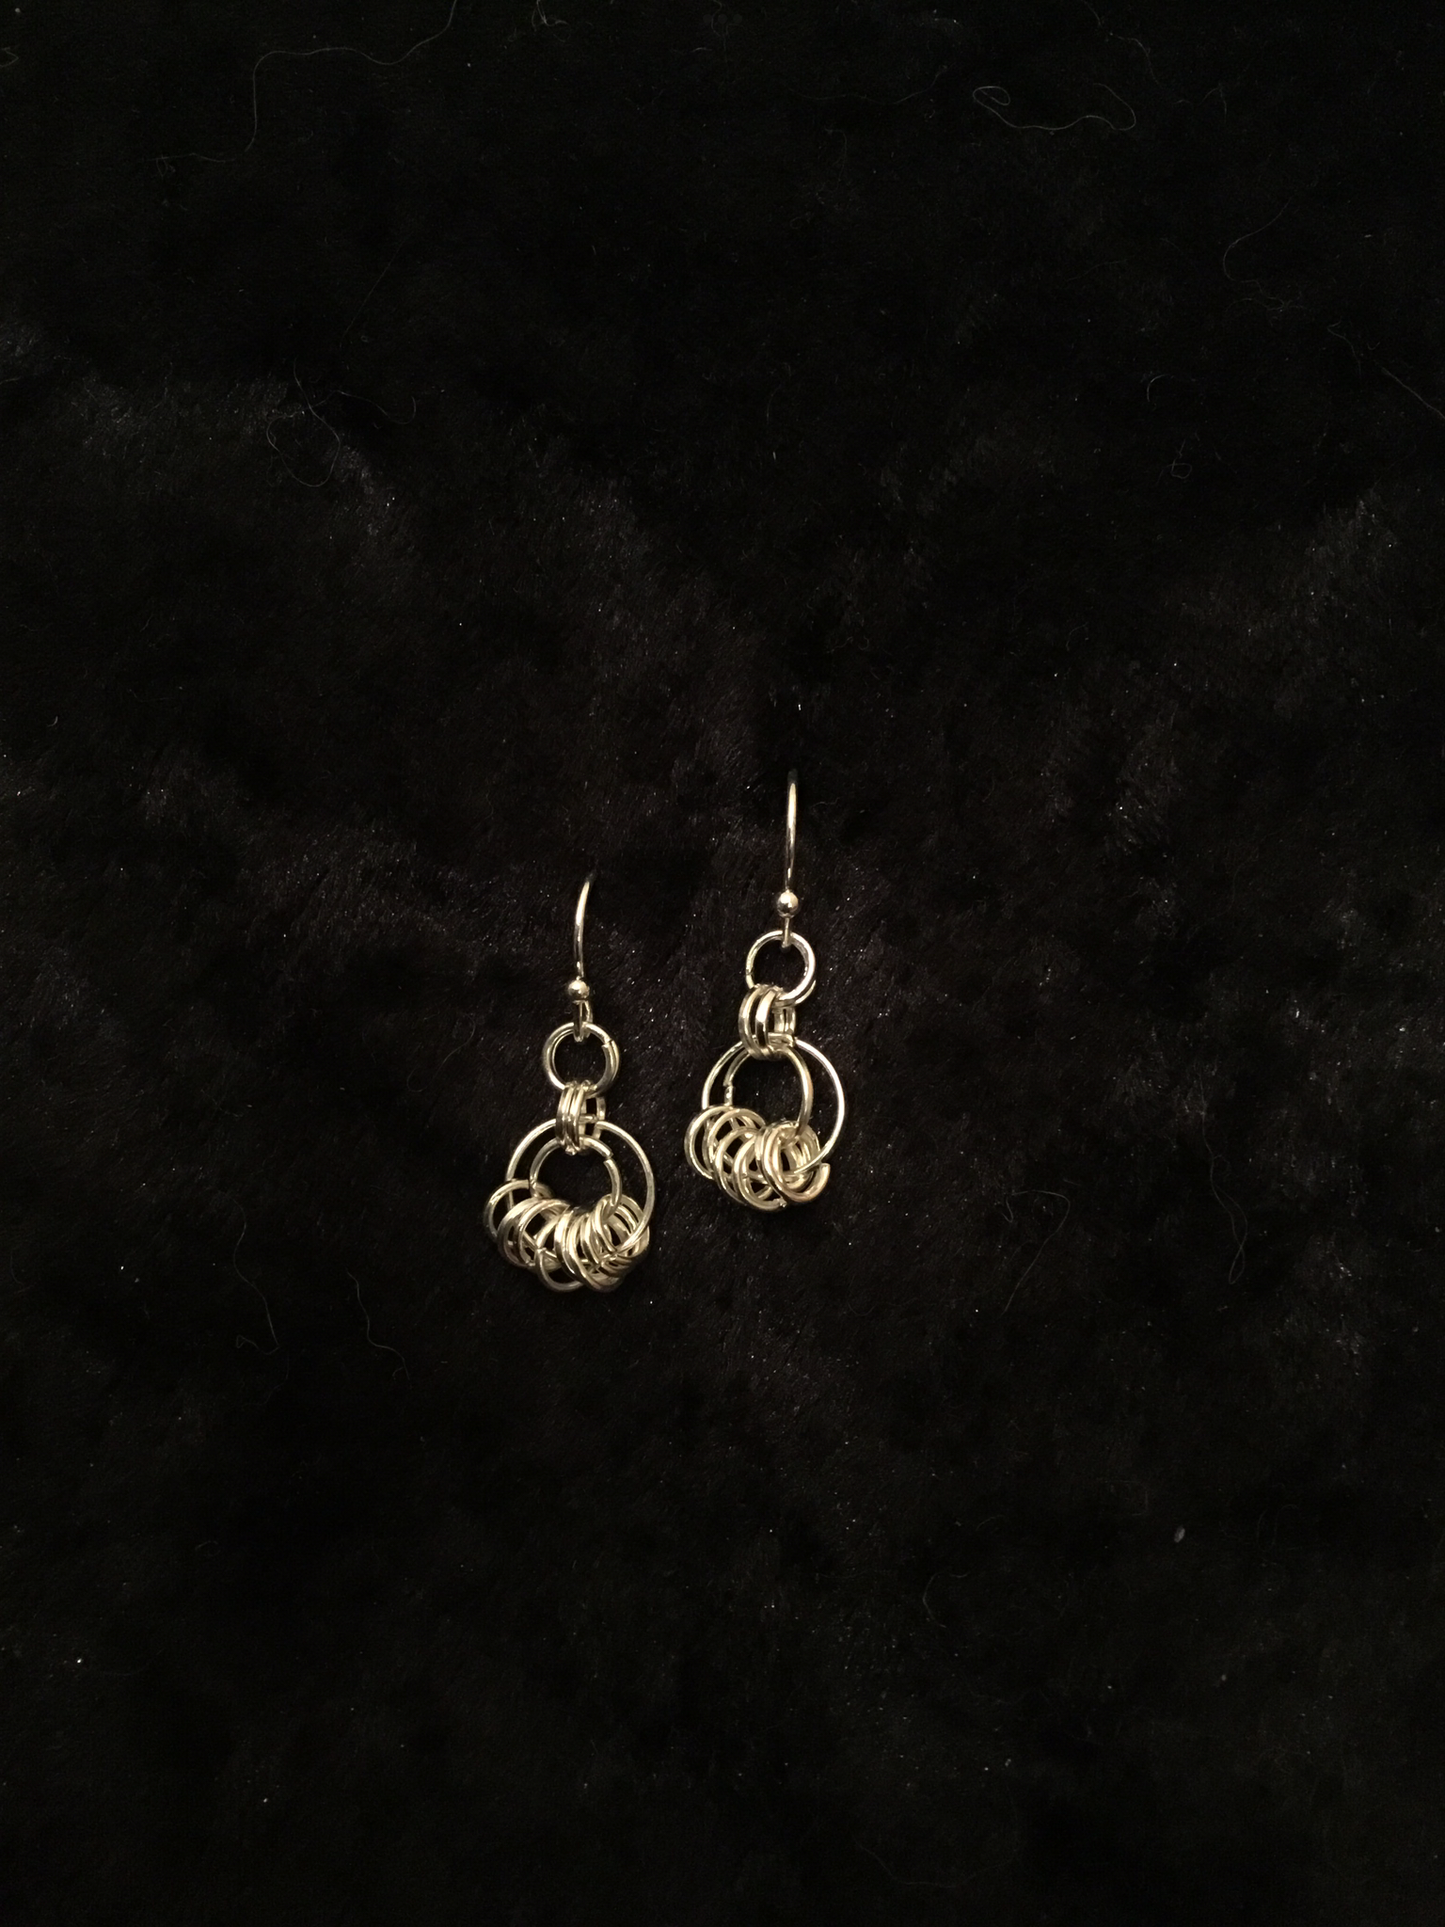 Wire silver rings earrings